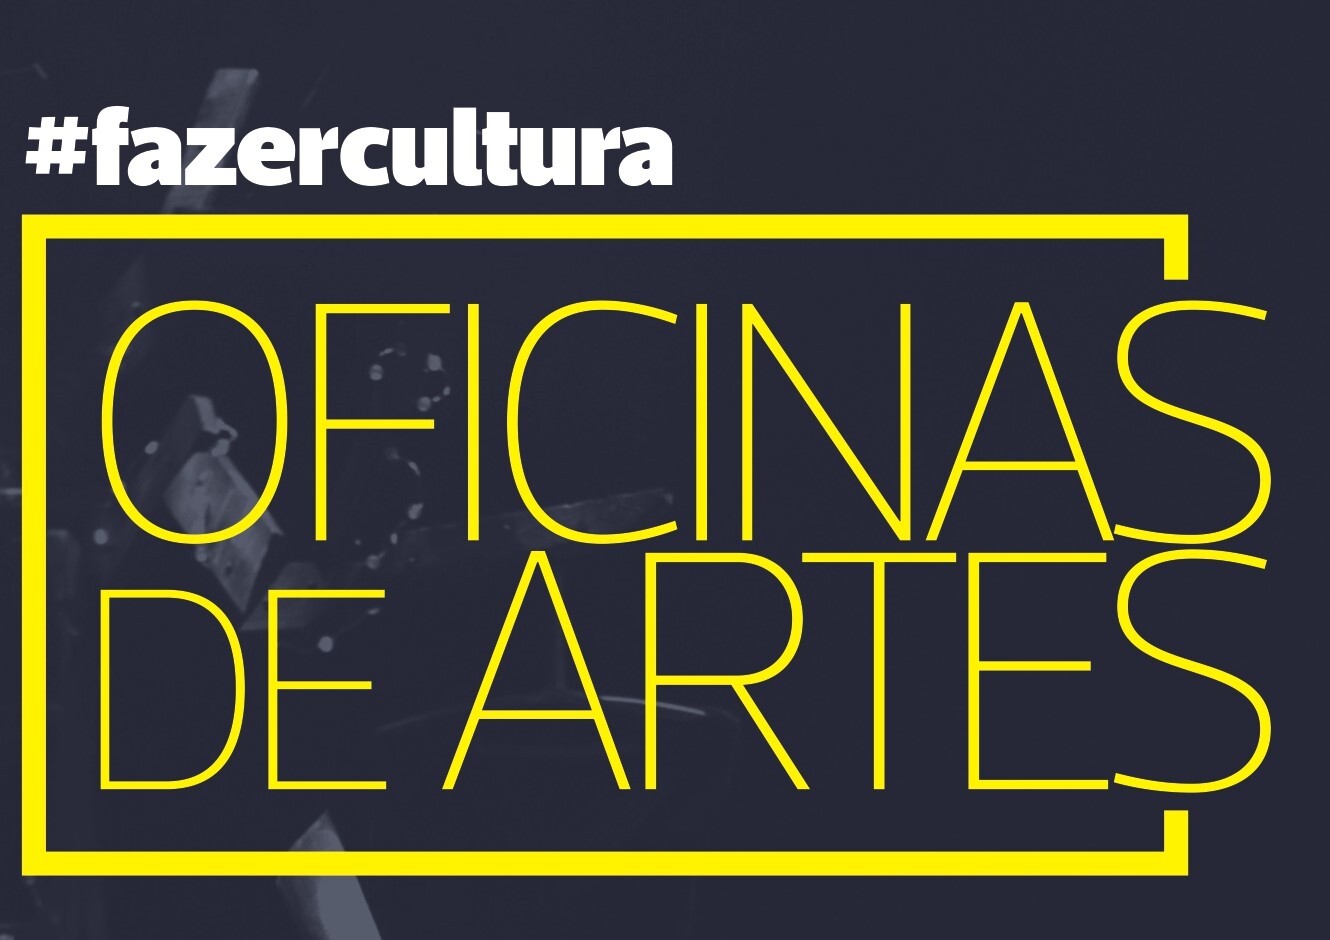 FAZER CULTURA: OFICINAS DE ARTES